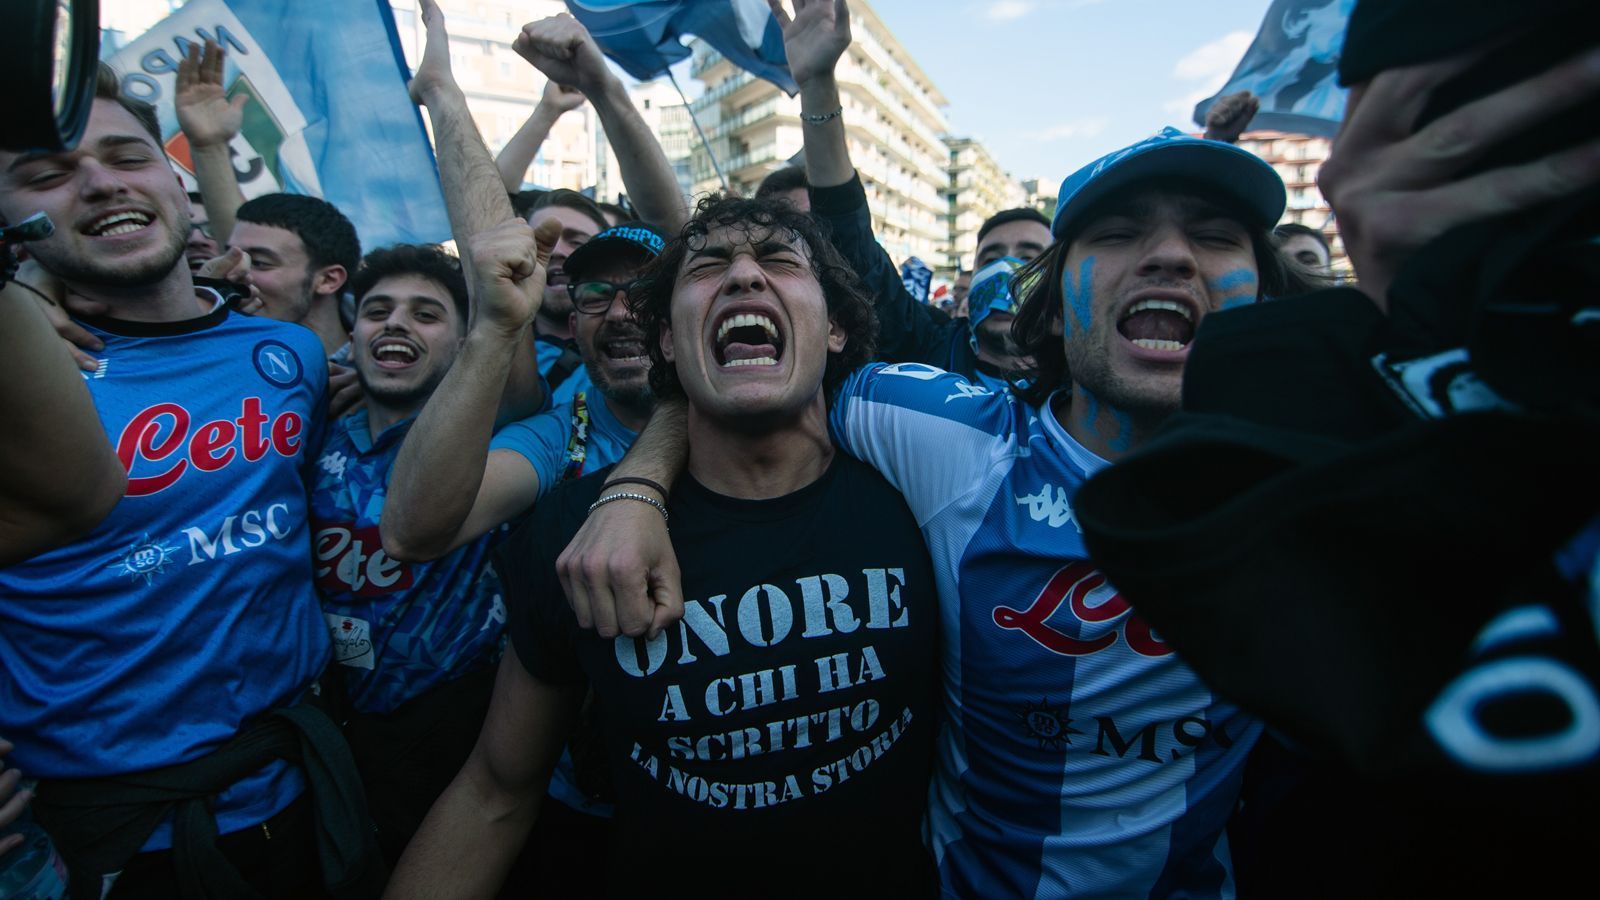 
                <strong>Pure Emotionen</strong><br>
                Viele Fans der Neapolitaner konnten ihr Glück gar nicht fassen, es flossen zahlreiche Freudentränen unter den Tifosi, die teilweise beim bislang letzten Meistertitel in der Saison 1989/90 noch gar nicht geboren waren. Damals führte Diego Maradona Neapel zum Titel. Nach dem mittlerweile verstorbenen Argentinier ist heute auch das Stadion in Neapel benannt.
              